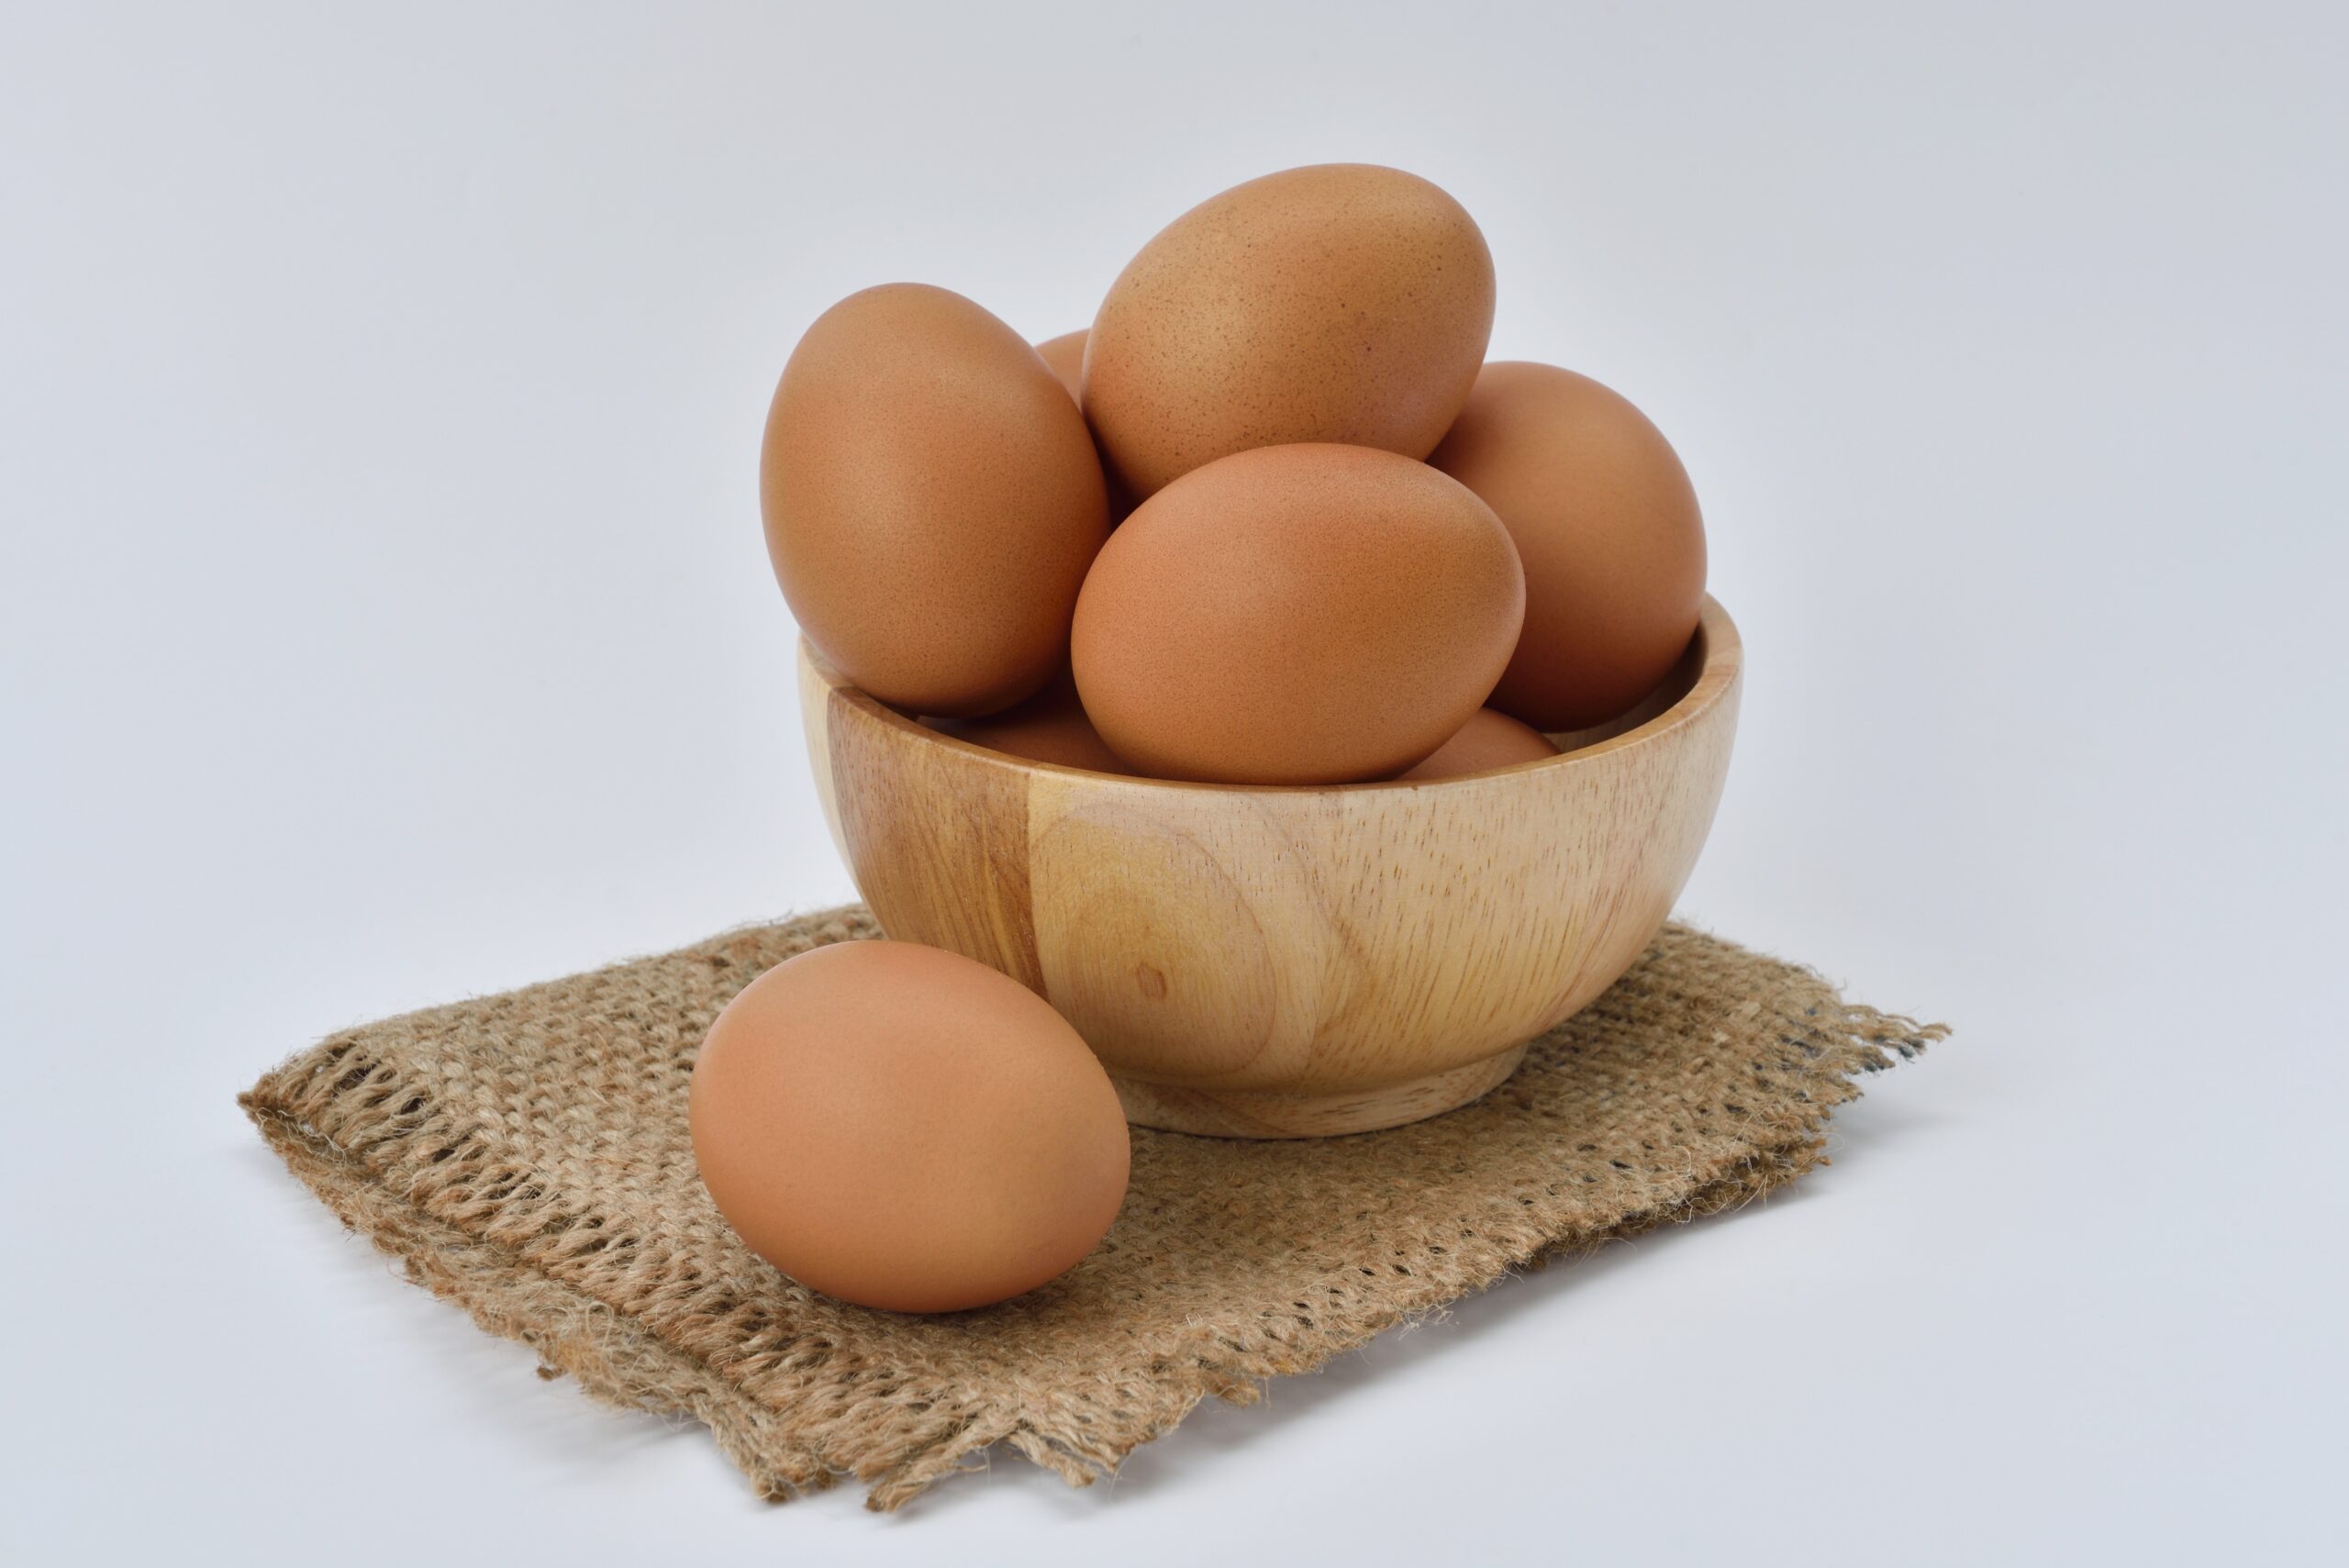 Da li su jaja sa crvenom mrljom bezbedna za jelo?